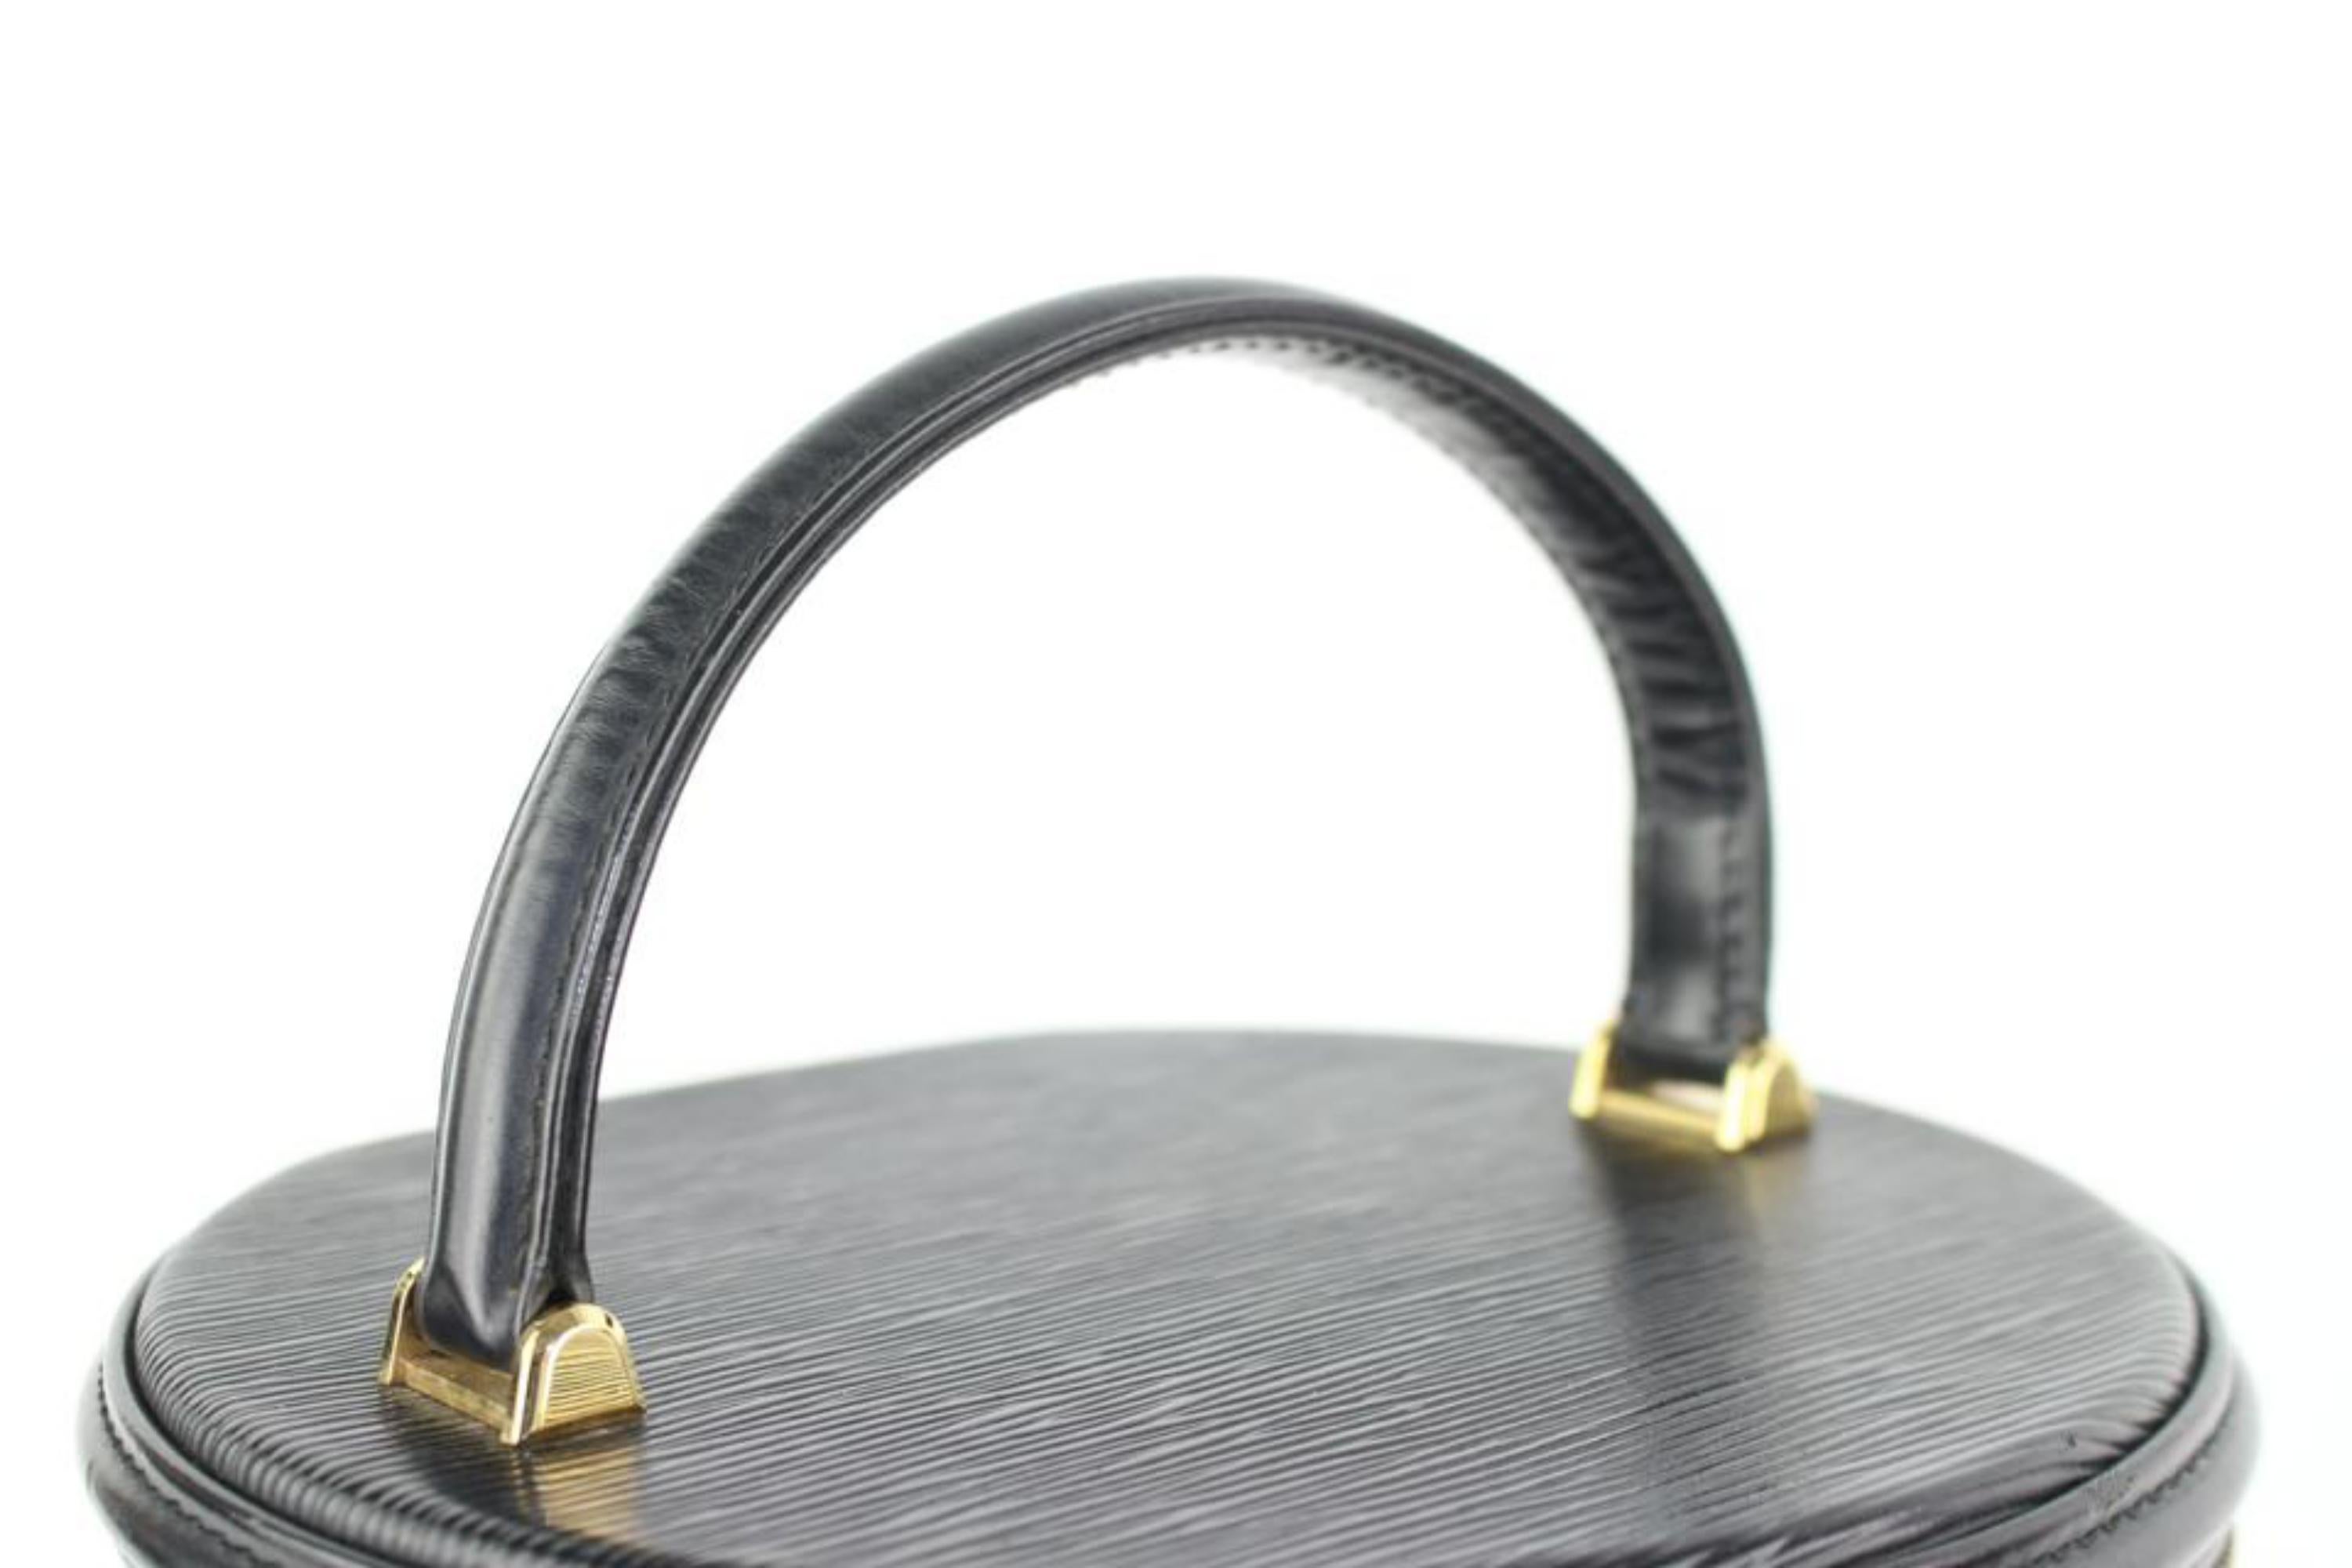 Louis Vuitton Cannes Noir Vanity Tote Case 27lz0129 Black Leather Satchel For Sale 8